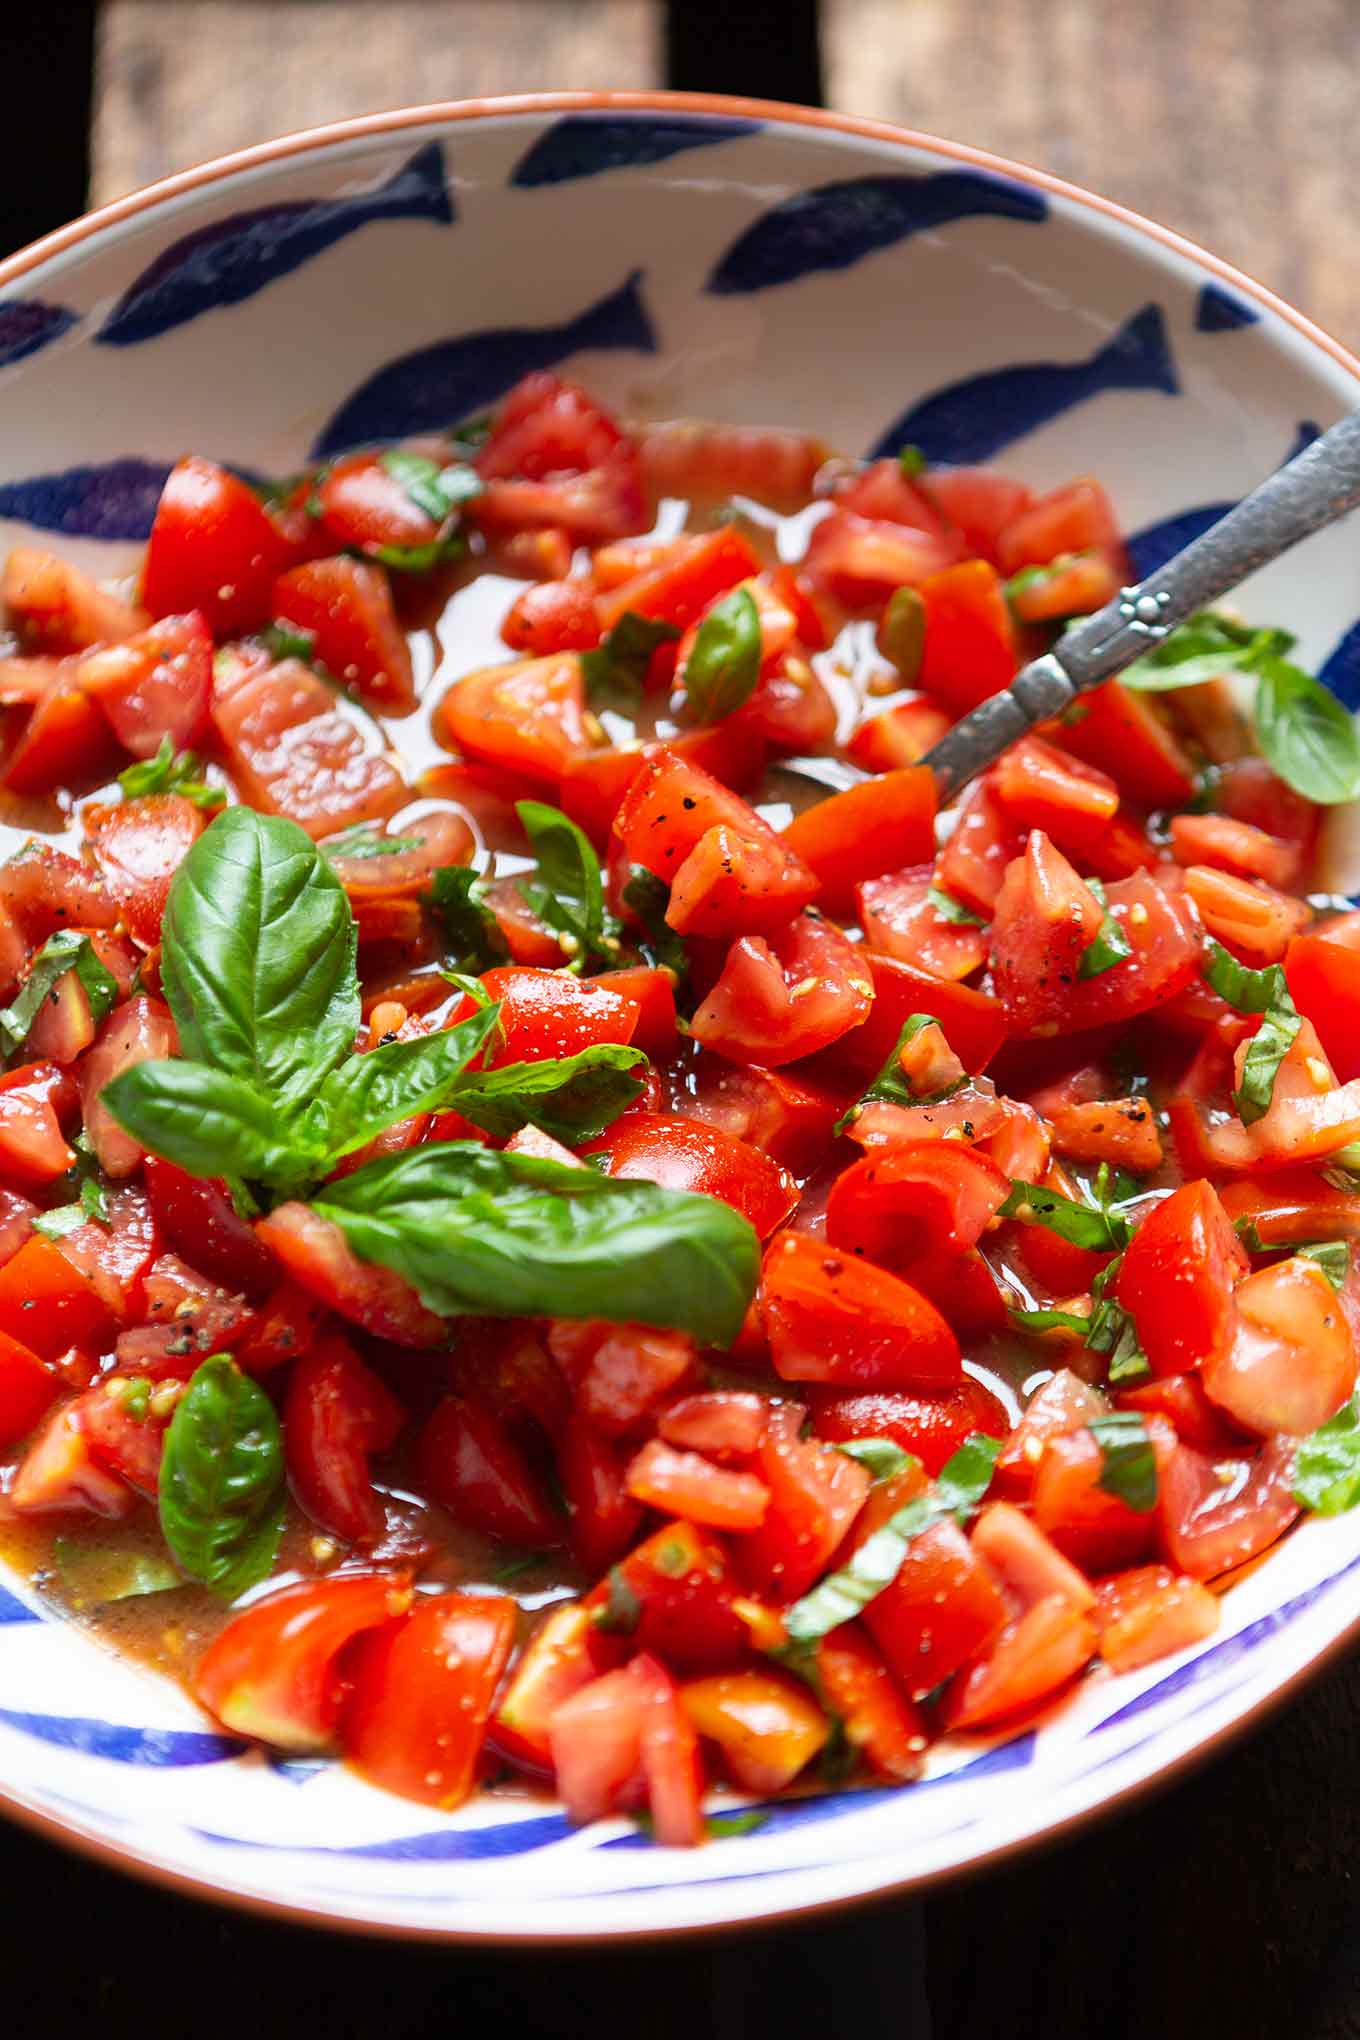 Bester einfacher Tomatensalat mit Basilikum. Dieses schnelle Sommer-Rezept aus 5 Zutaten ist der Renner! Super unkompliziert und SO gut, den müsst ihr probieren! - Kochkarussell.com #tomatensalat #sommerrezept #schnellundeinfach #feierabendküche #kochkarussell